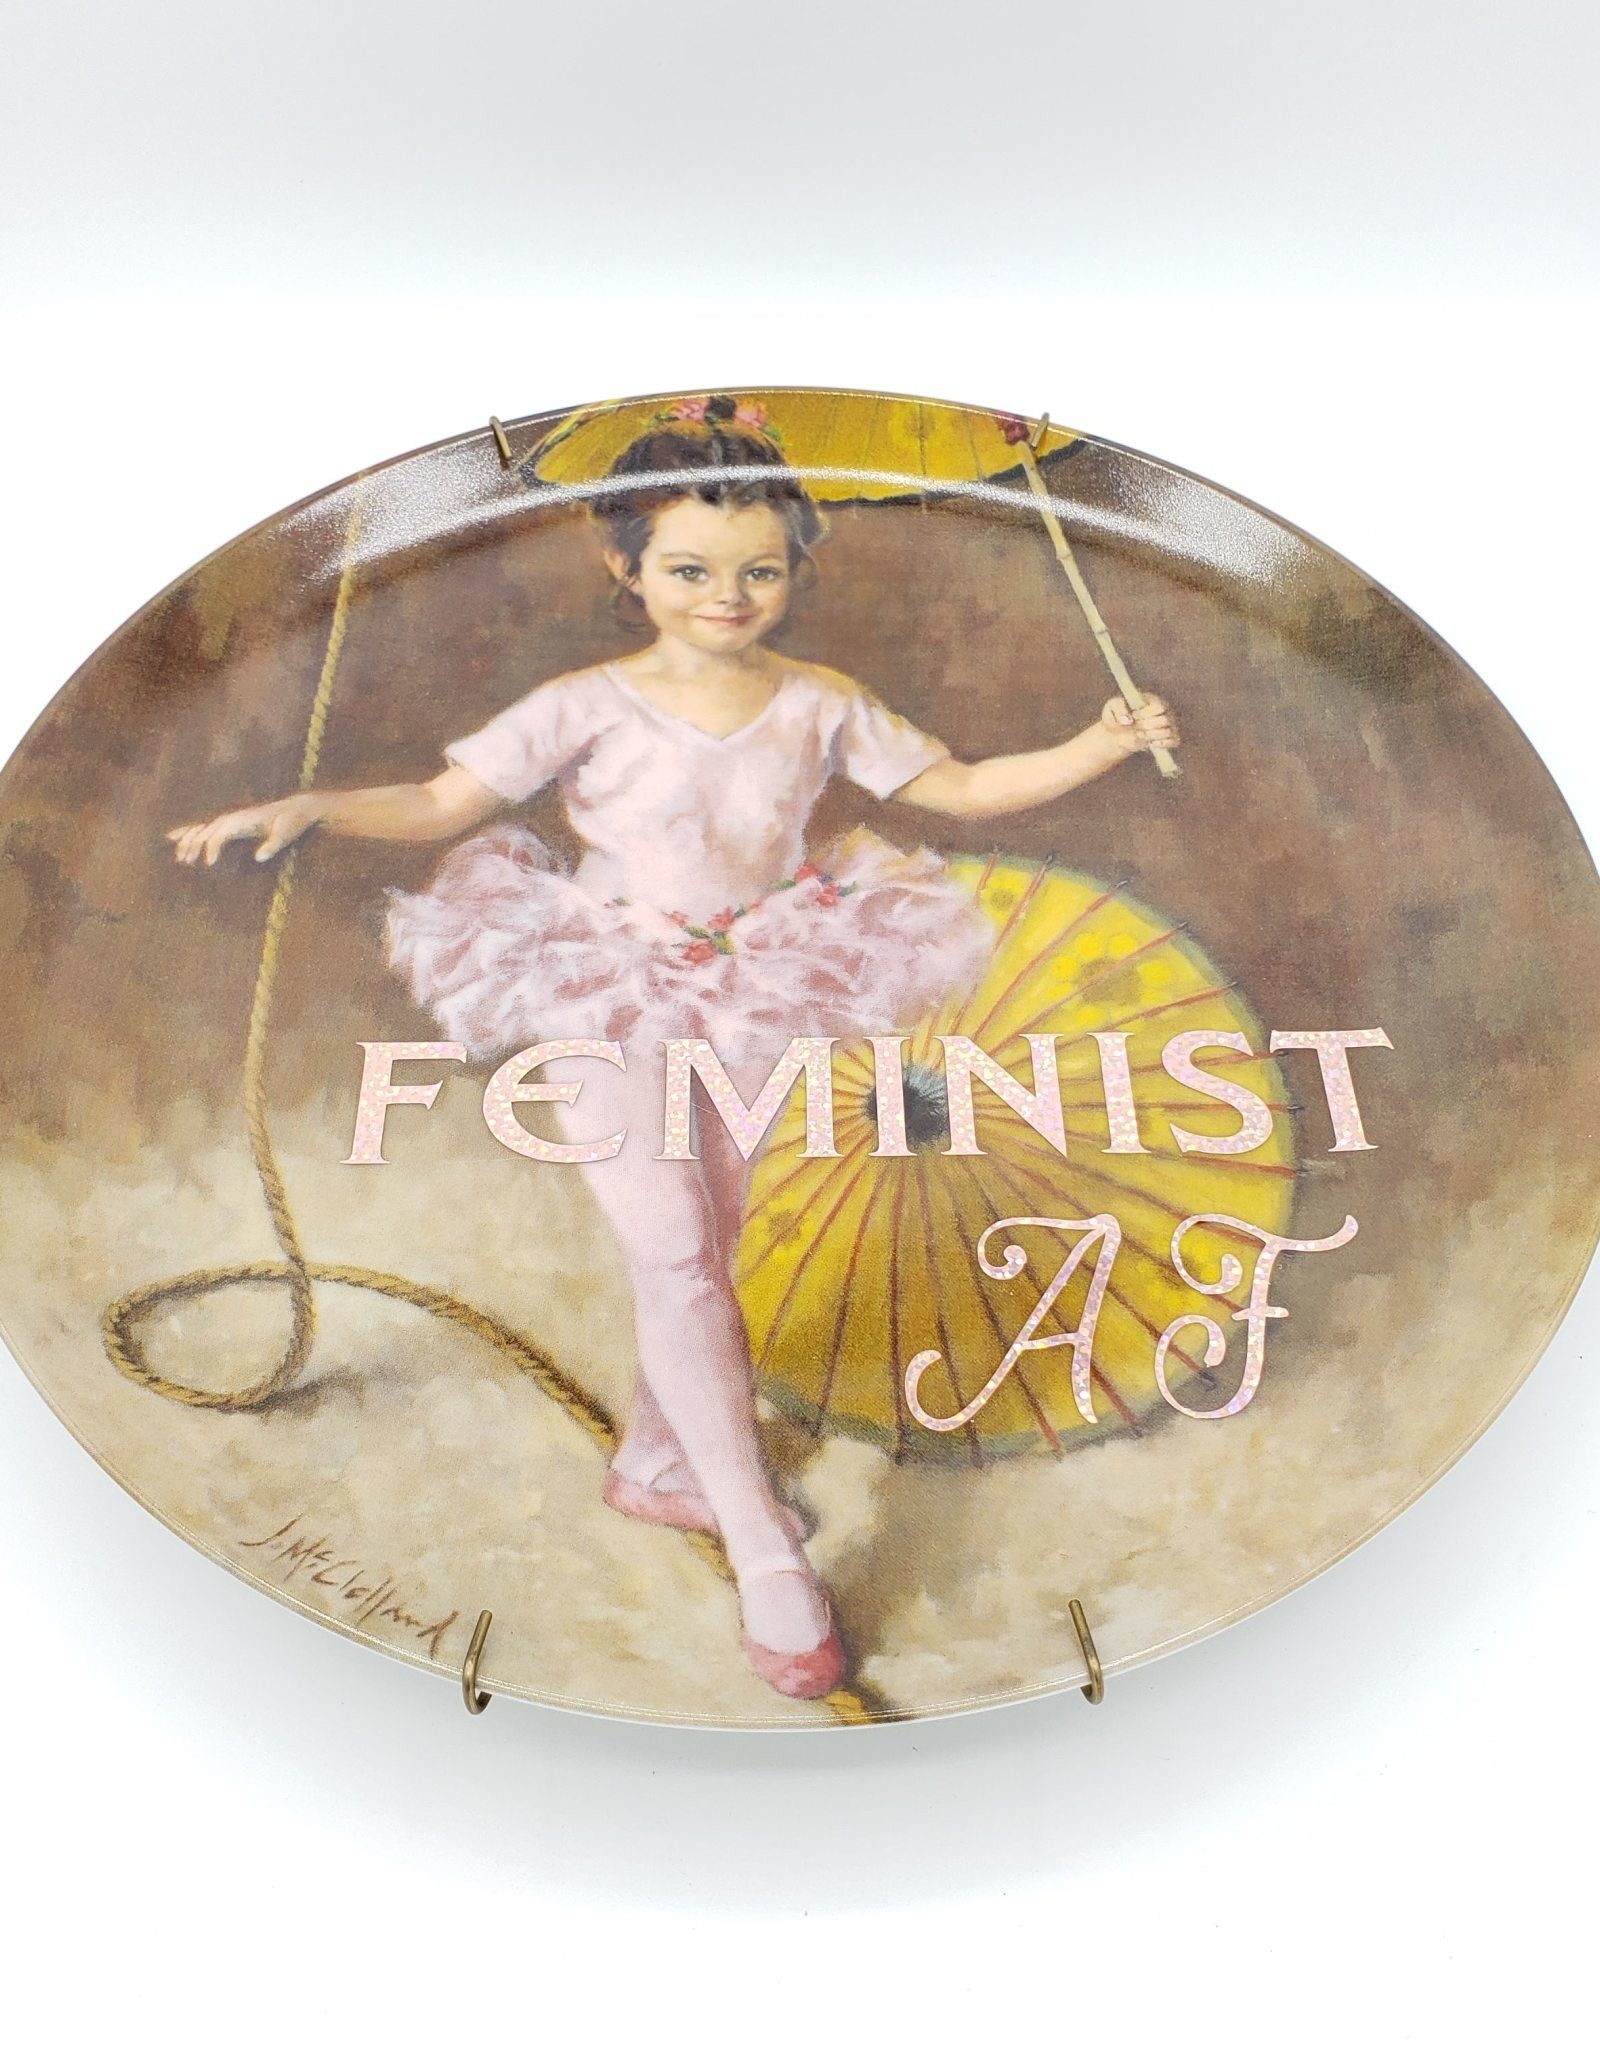 Redux "Feminist AF" - Vintage Upcycled Plate Art